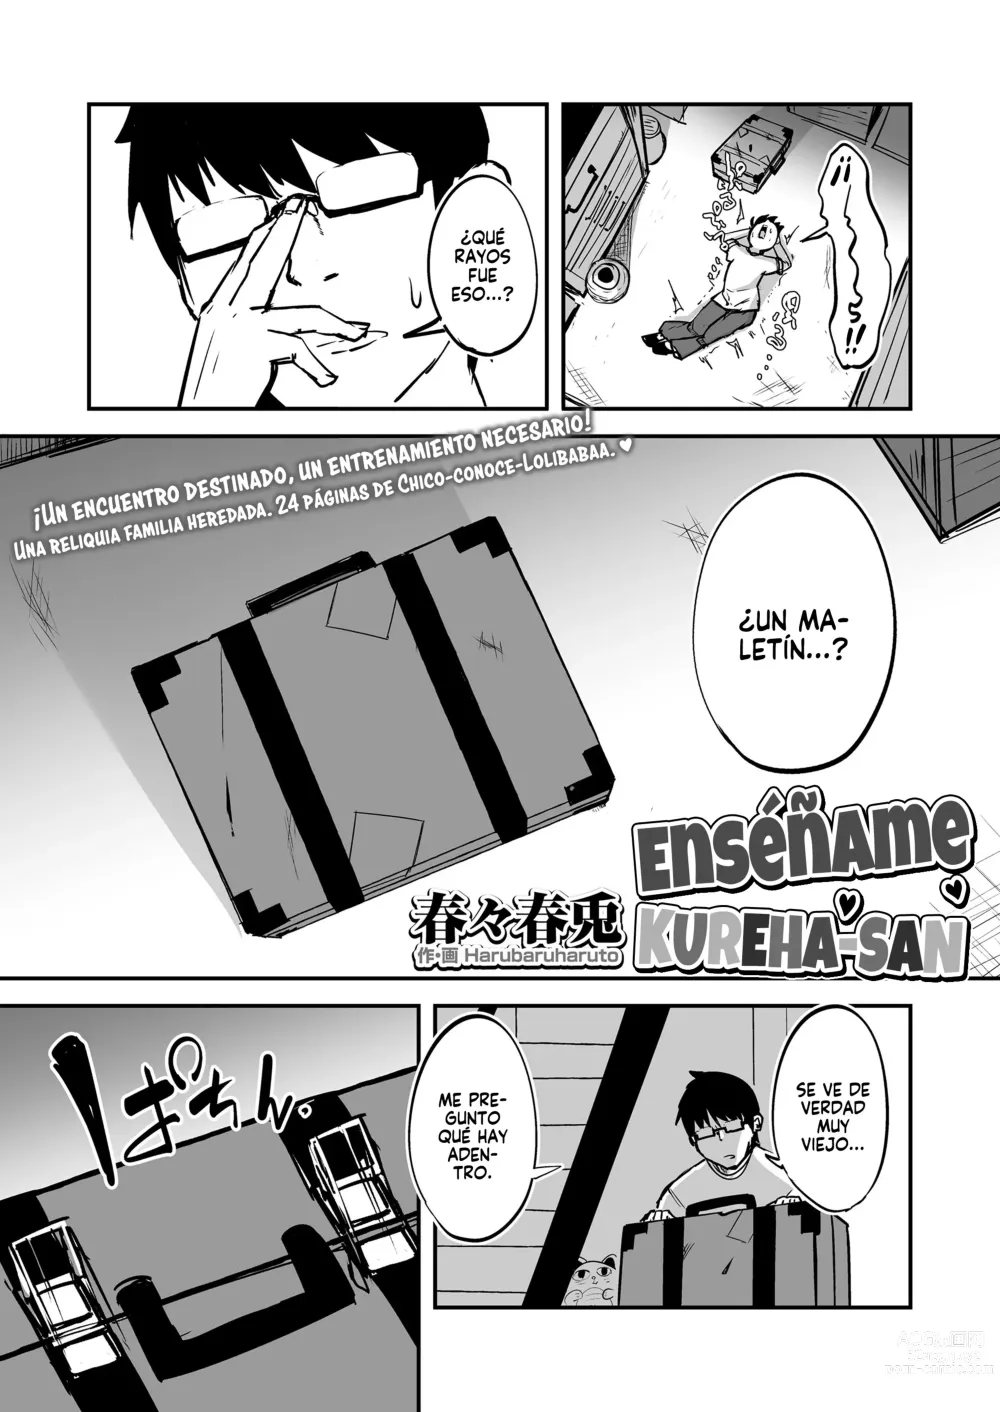 Page 2 of manga Enséñame, Kureha-san 1-2